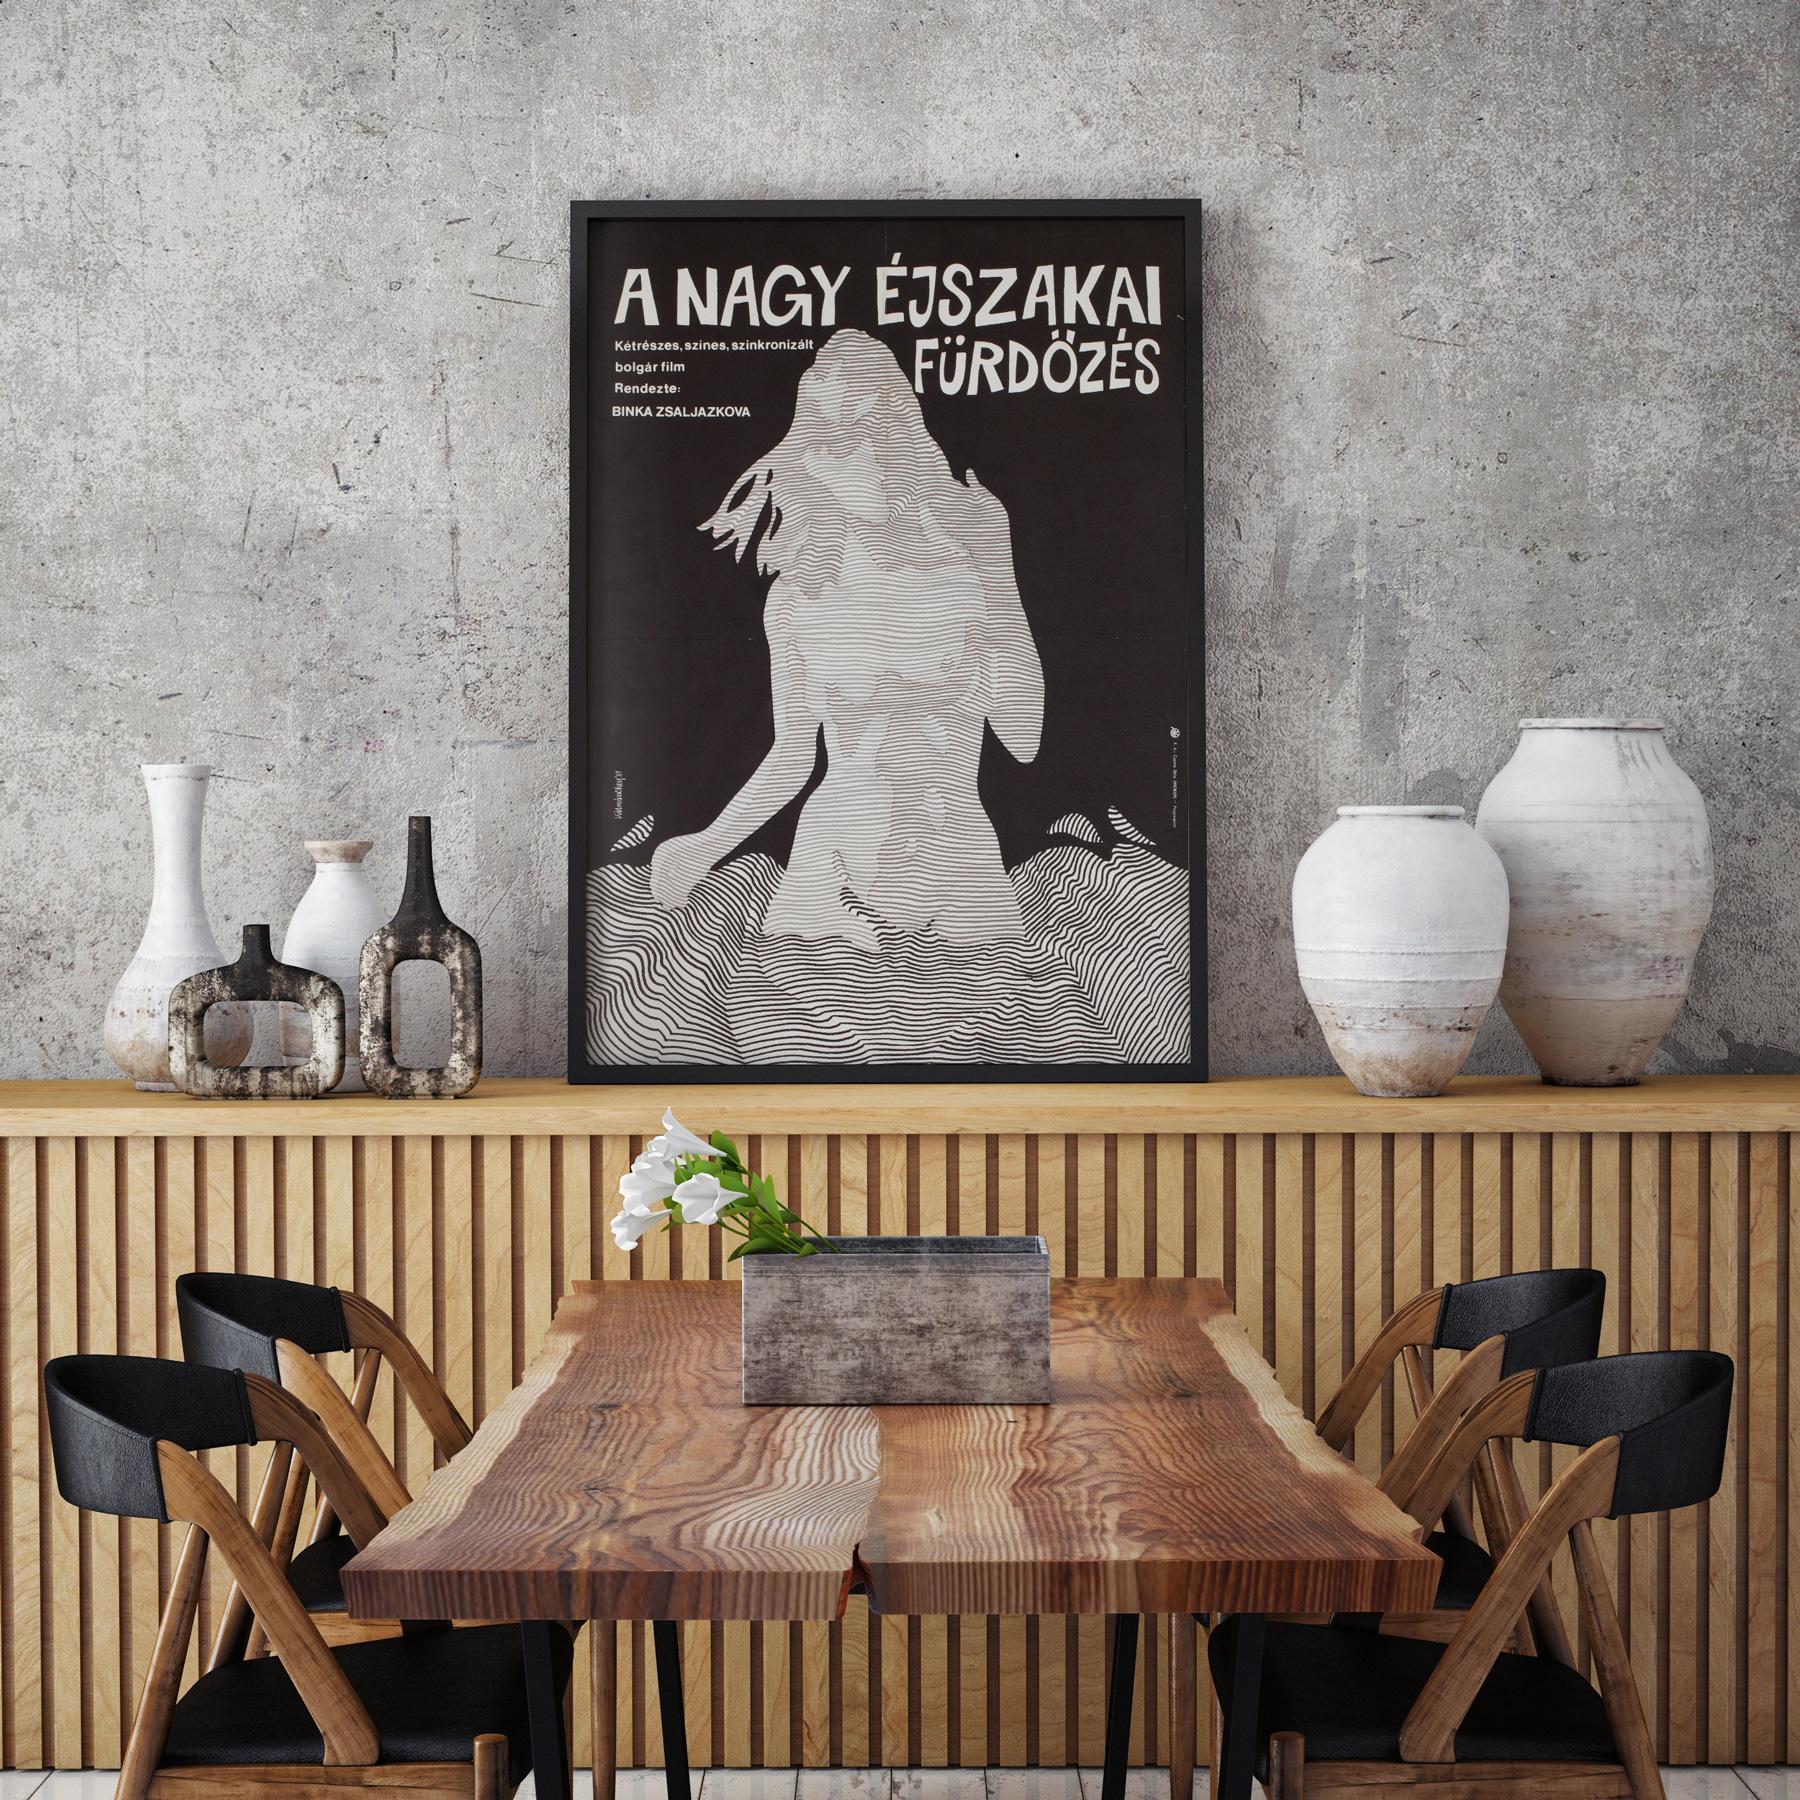 Magnifique design de Zoltan Kalmanchey BIGLI sur cette affiche hongroise originale de première année de sortie pour le puissant film bulgare Golyamoto noshtno kapane (Le grand bain de nuit).

Cette affiche de film vintage a des dimensions de 16 1/4